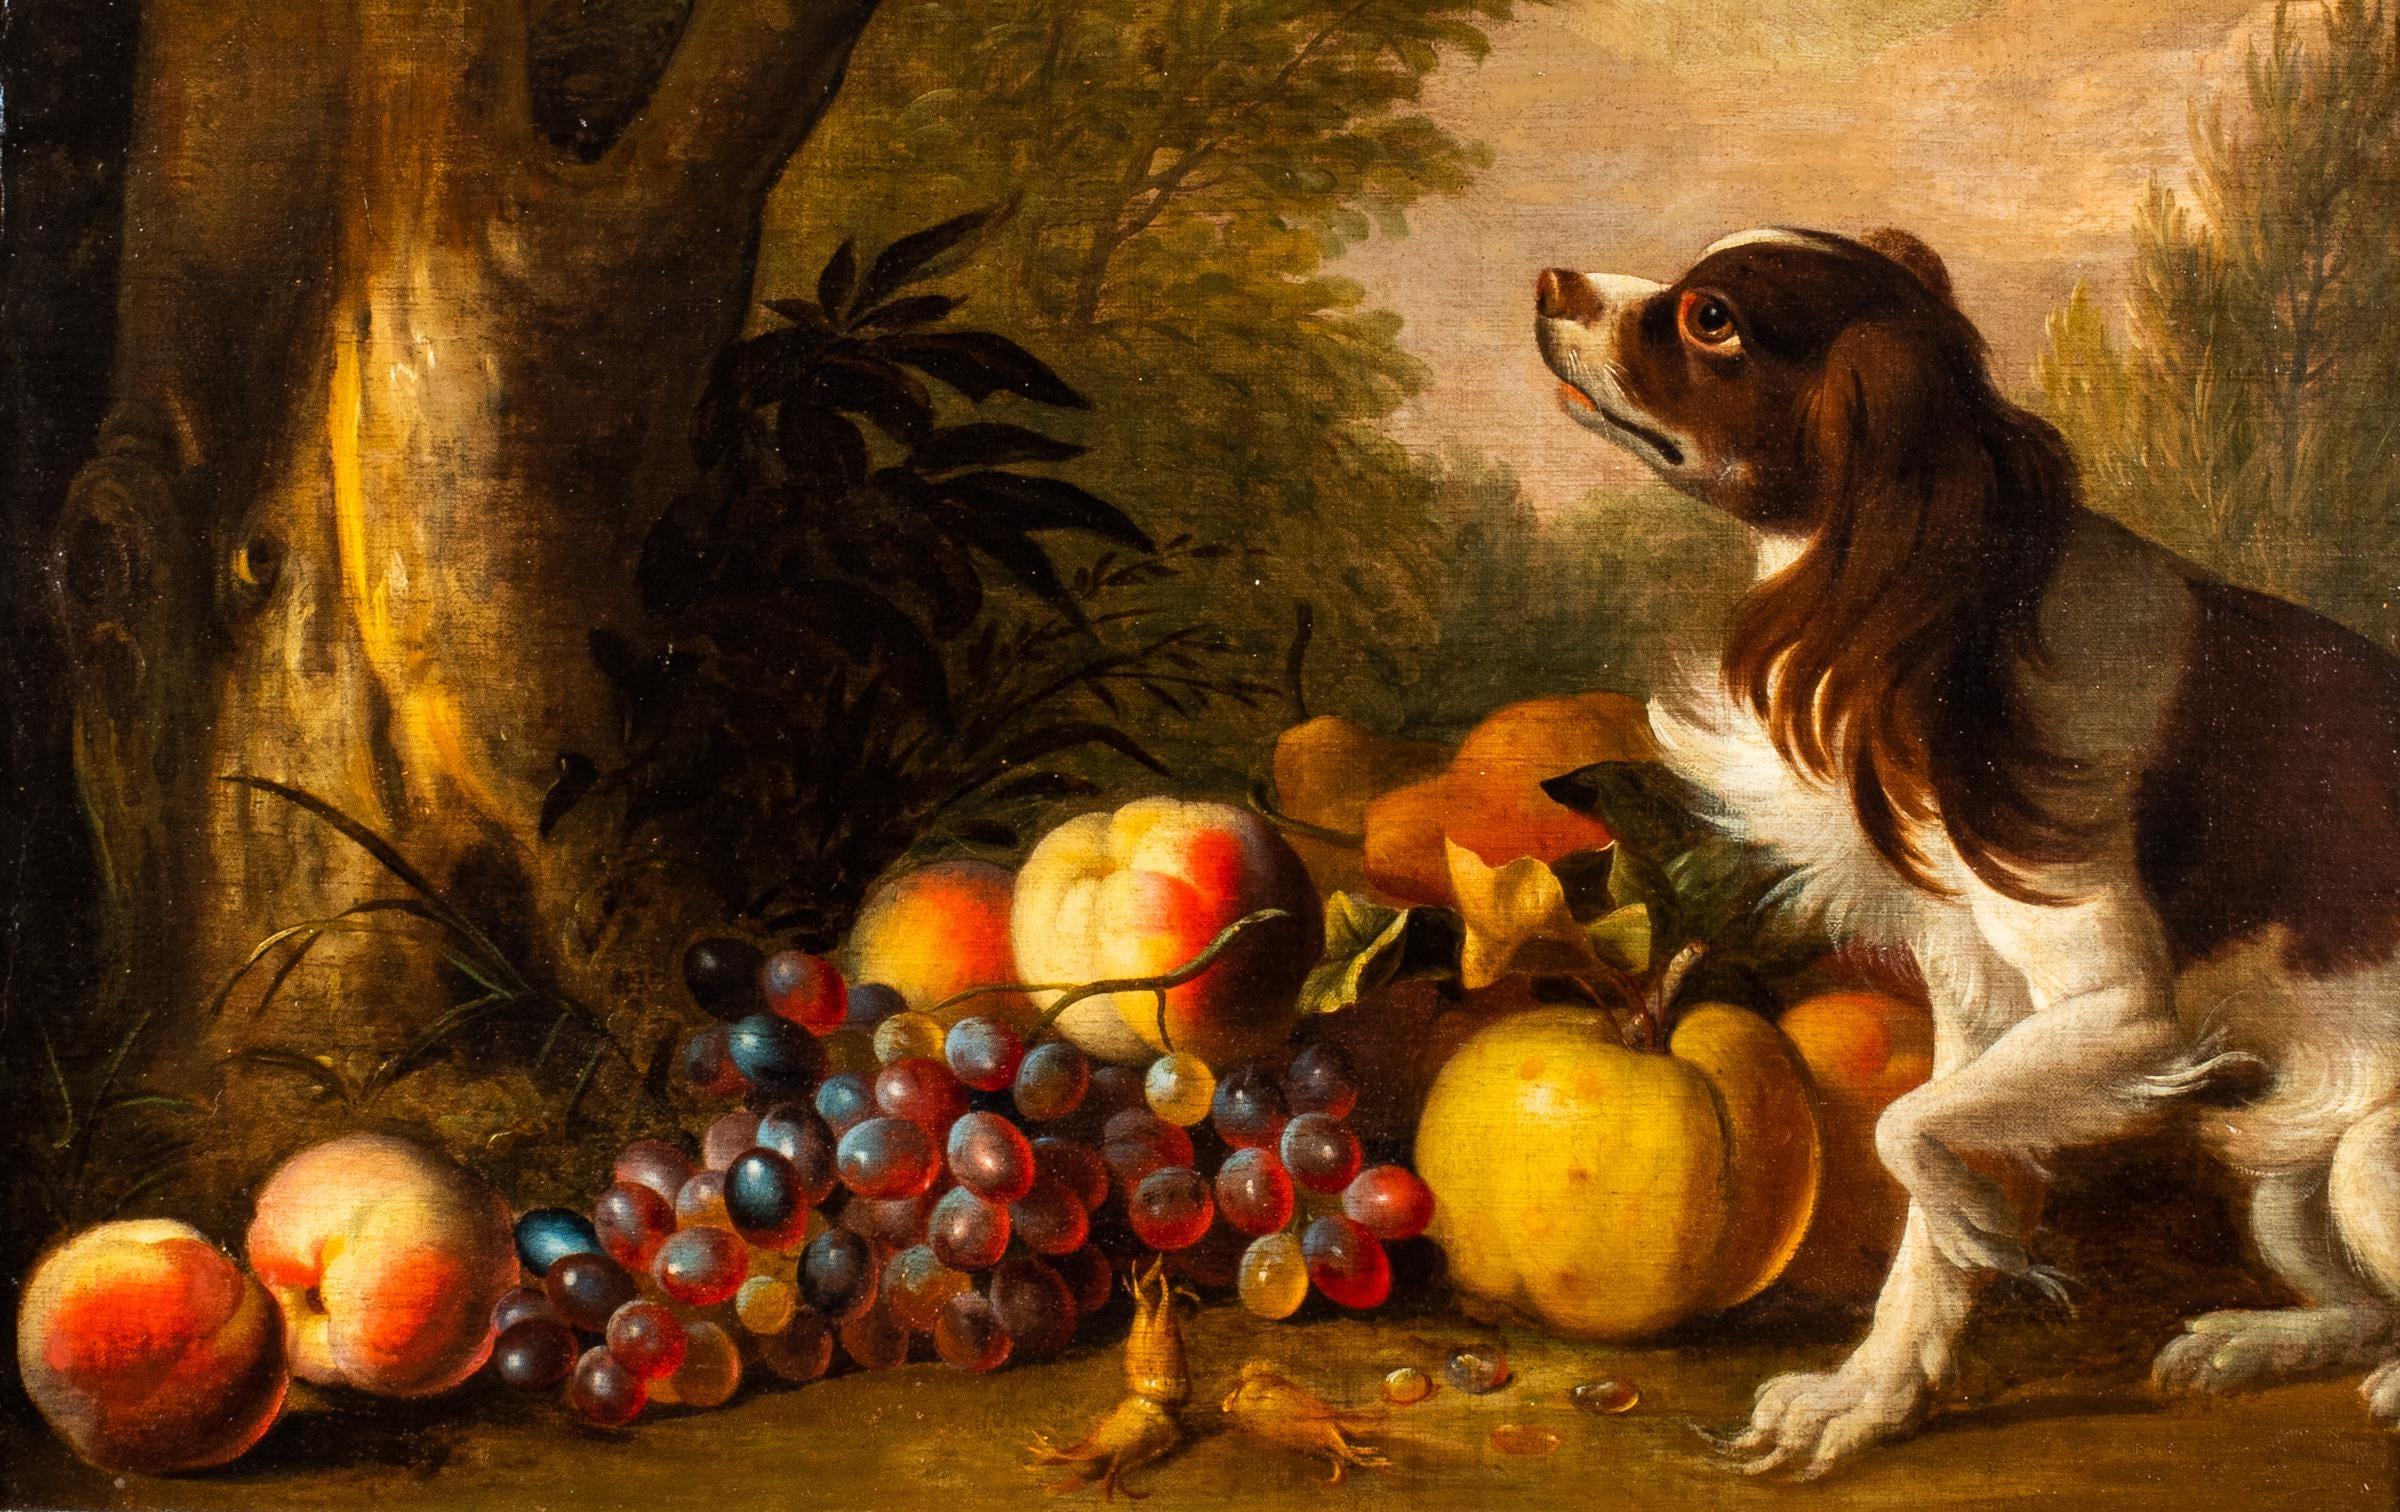 Porträt eines Spanielhundes mit Früchten in einer Waldlandschaft aus dem 18. Jahrhundert. – Painting von Tobias Stranover